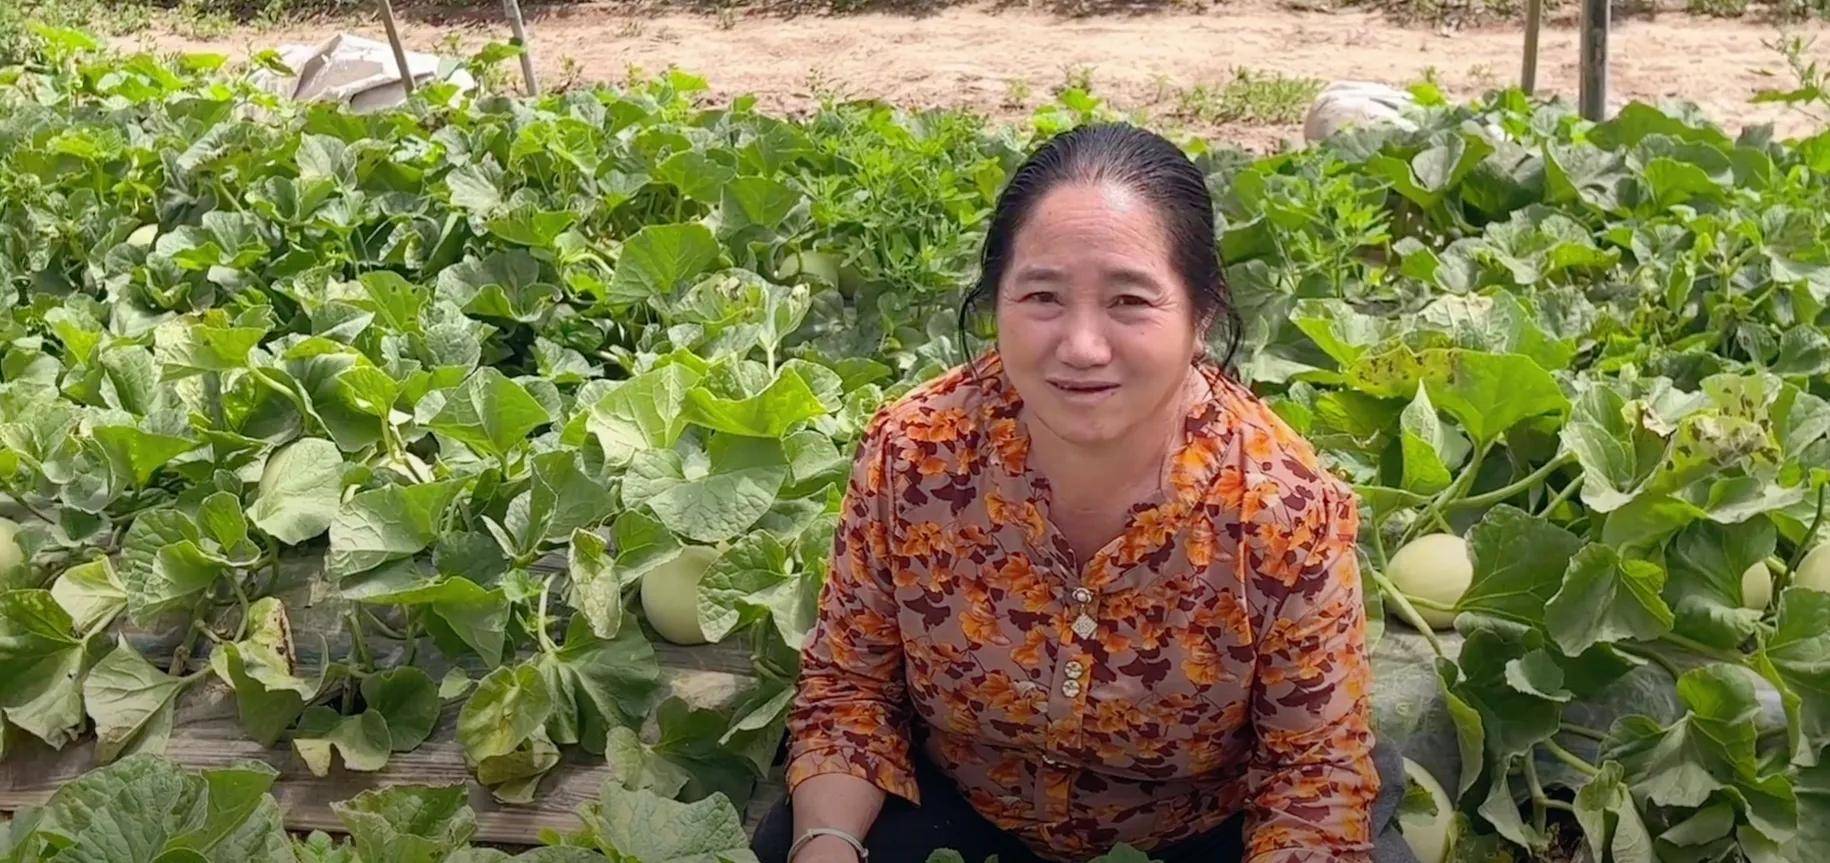 玛丽卖甜瓜创新高,老挝妈妈帮大忙!